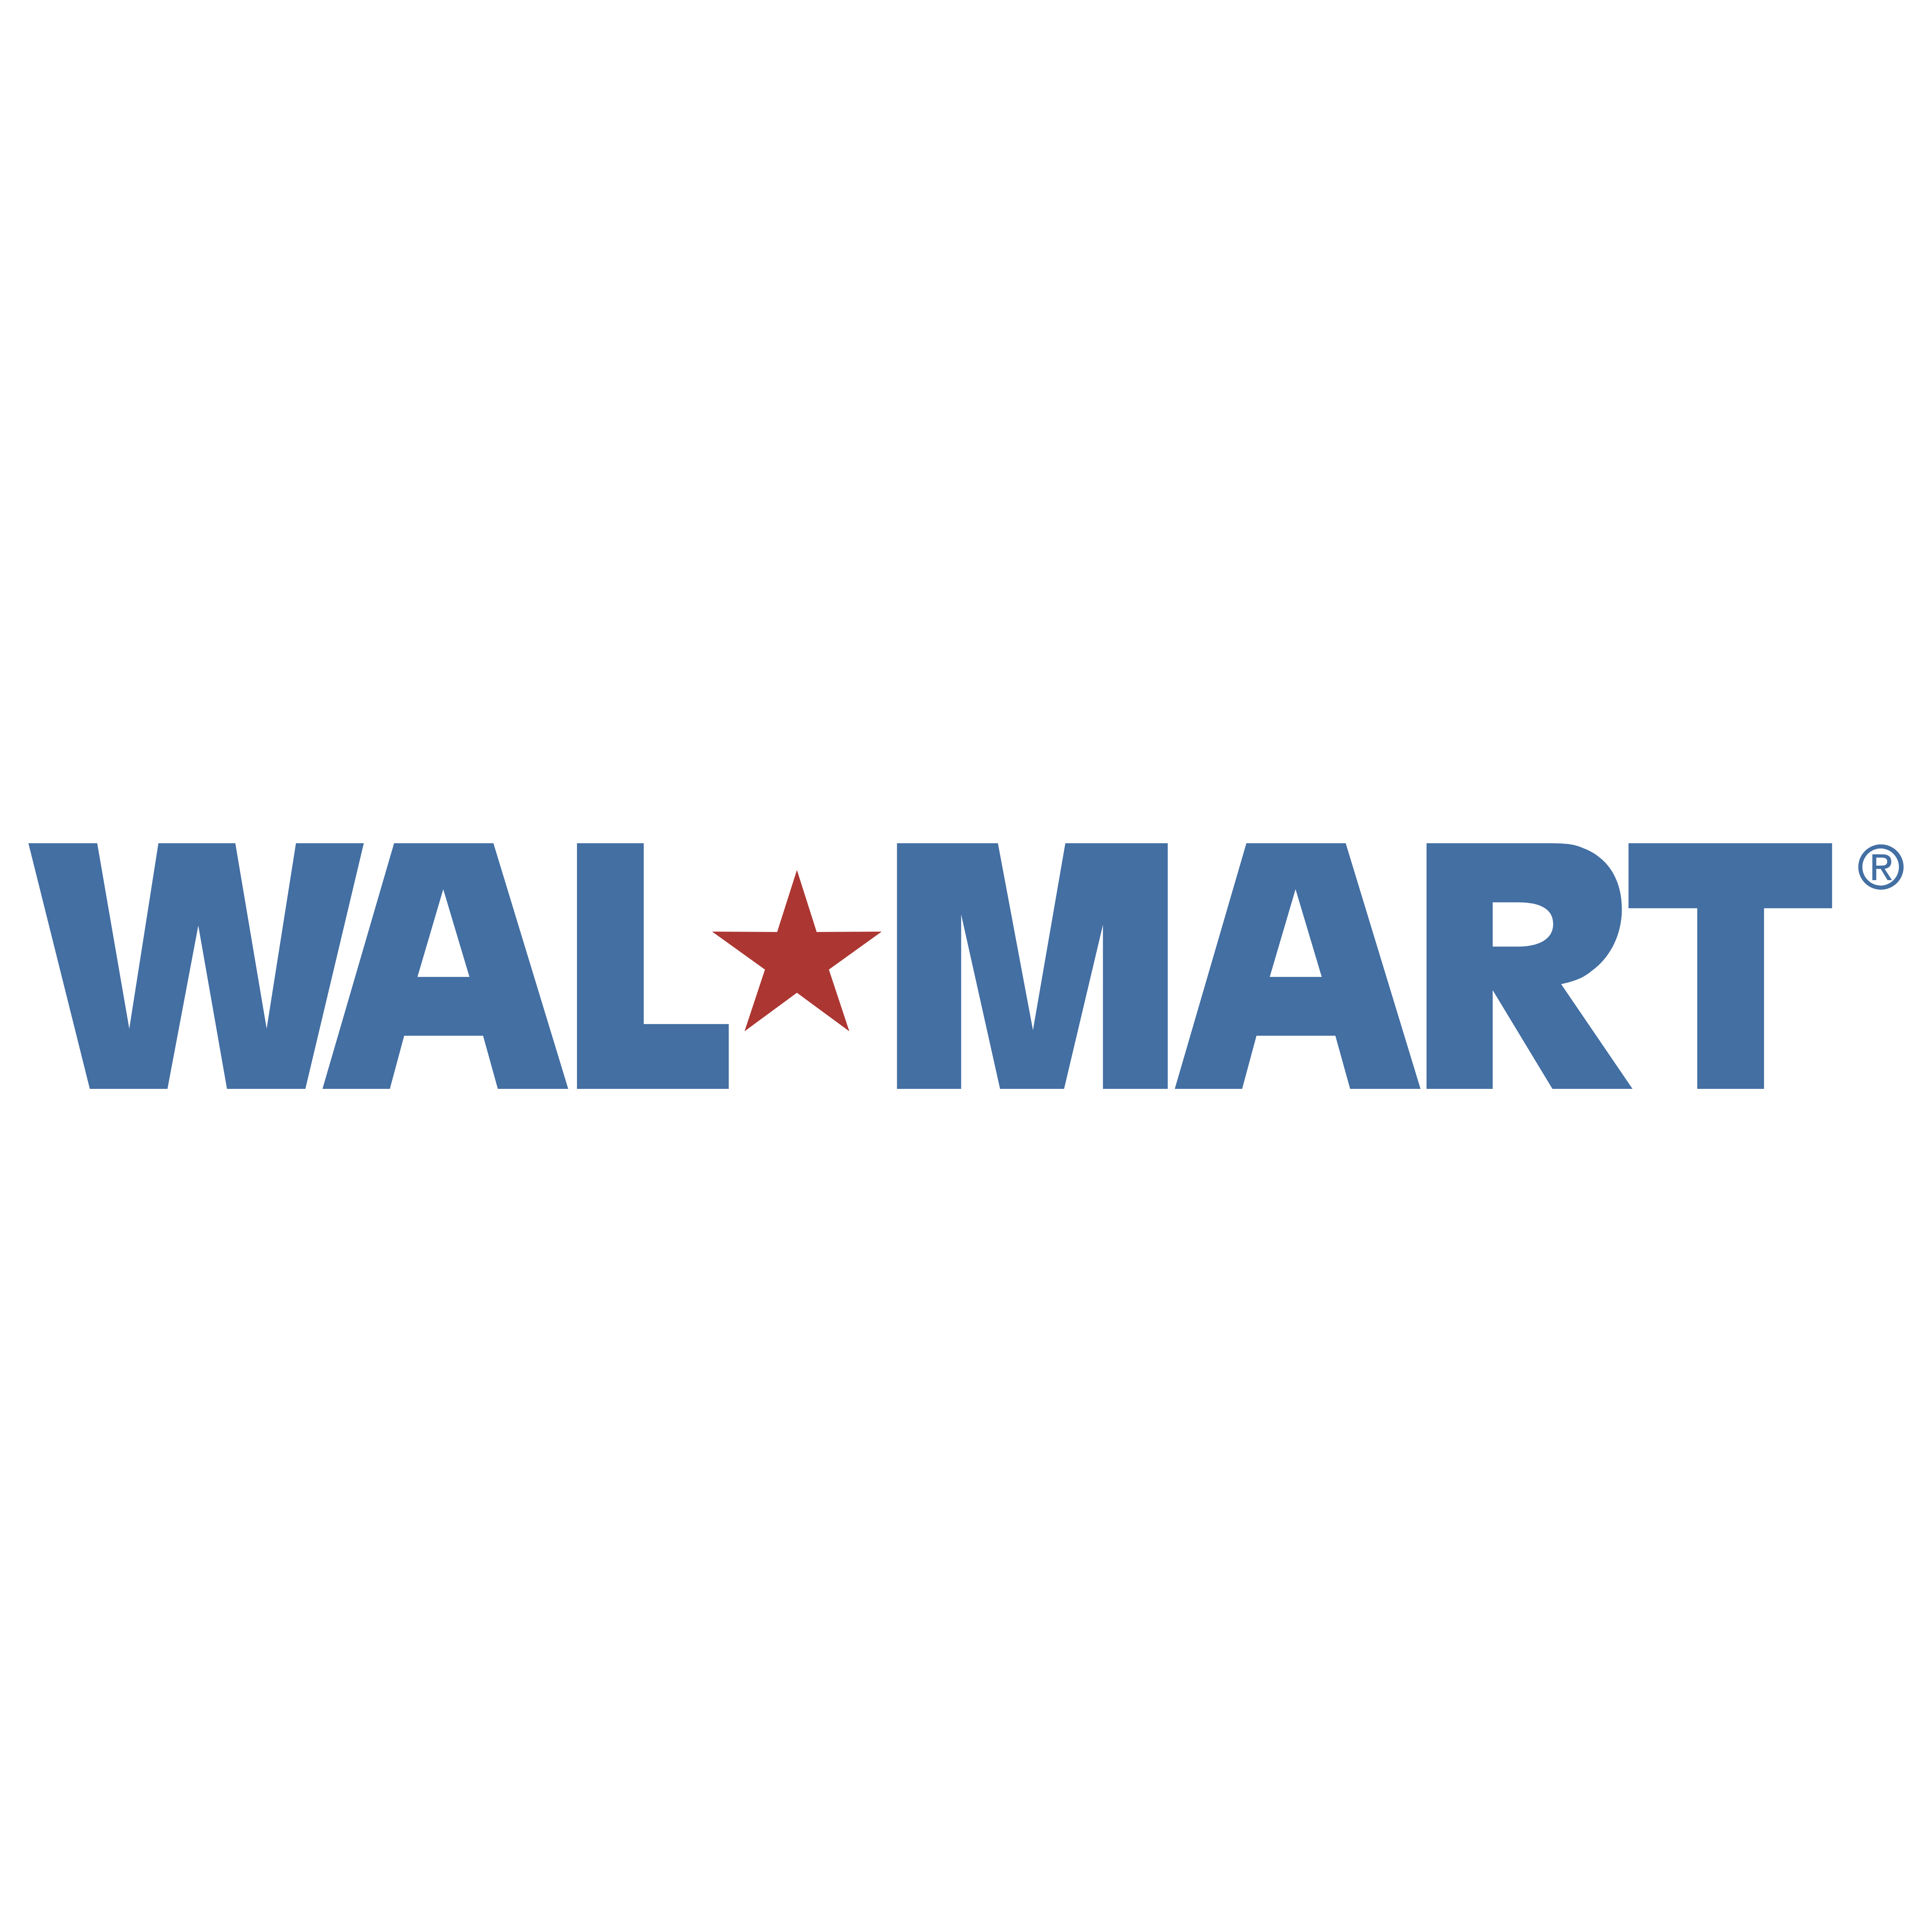 walmart-logos-download